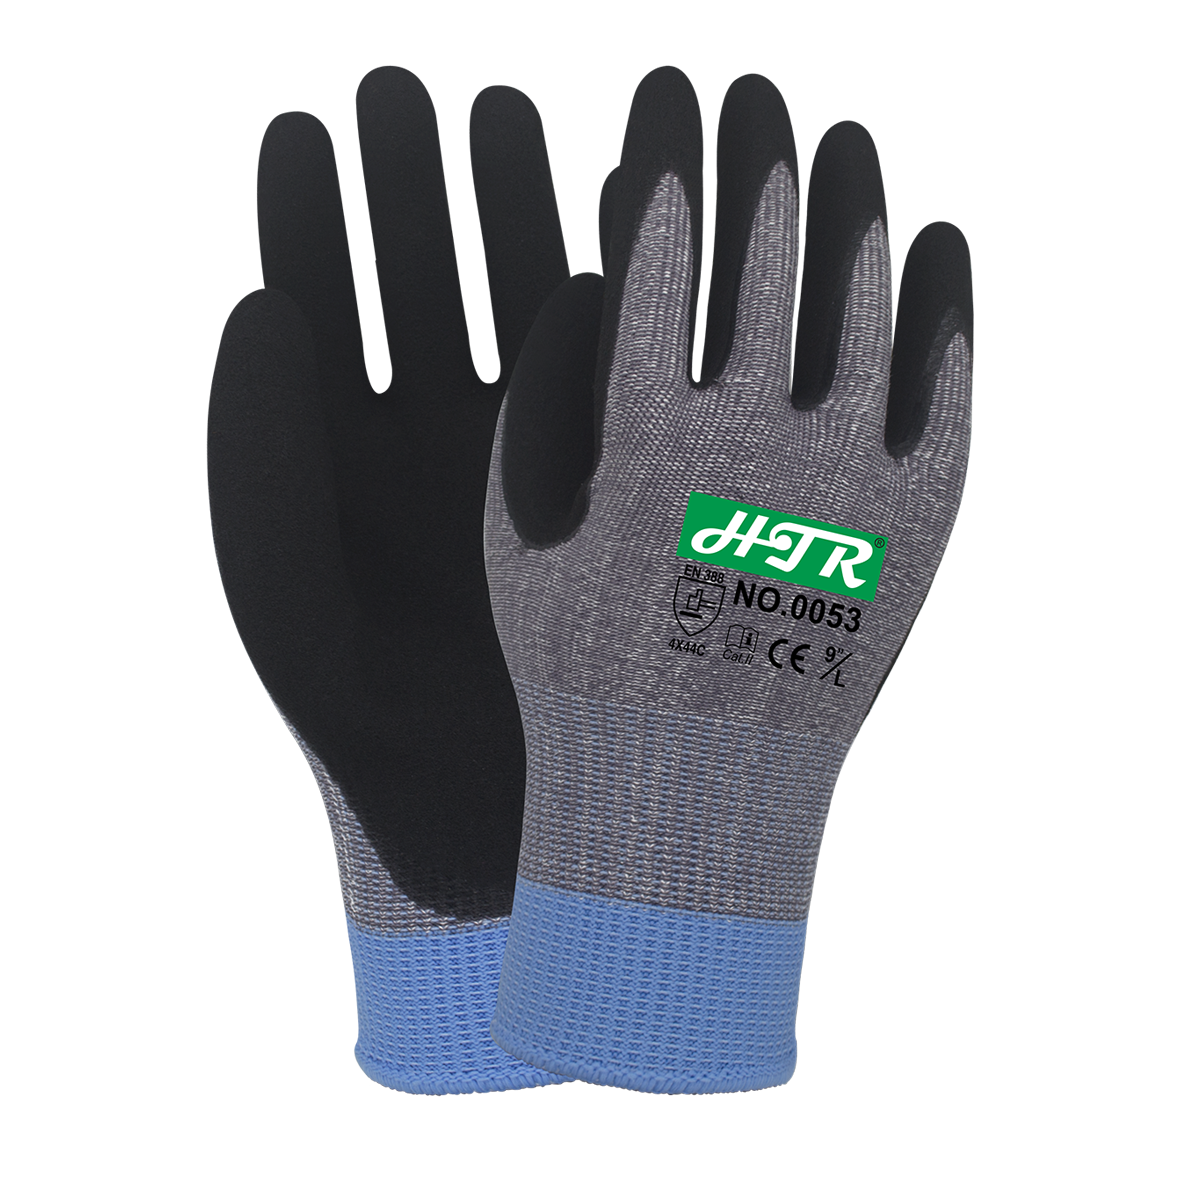 Super anti-cut nitrile gloves